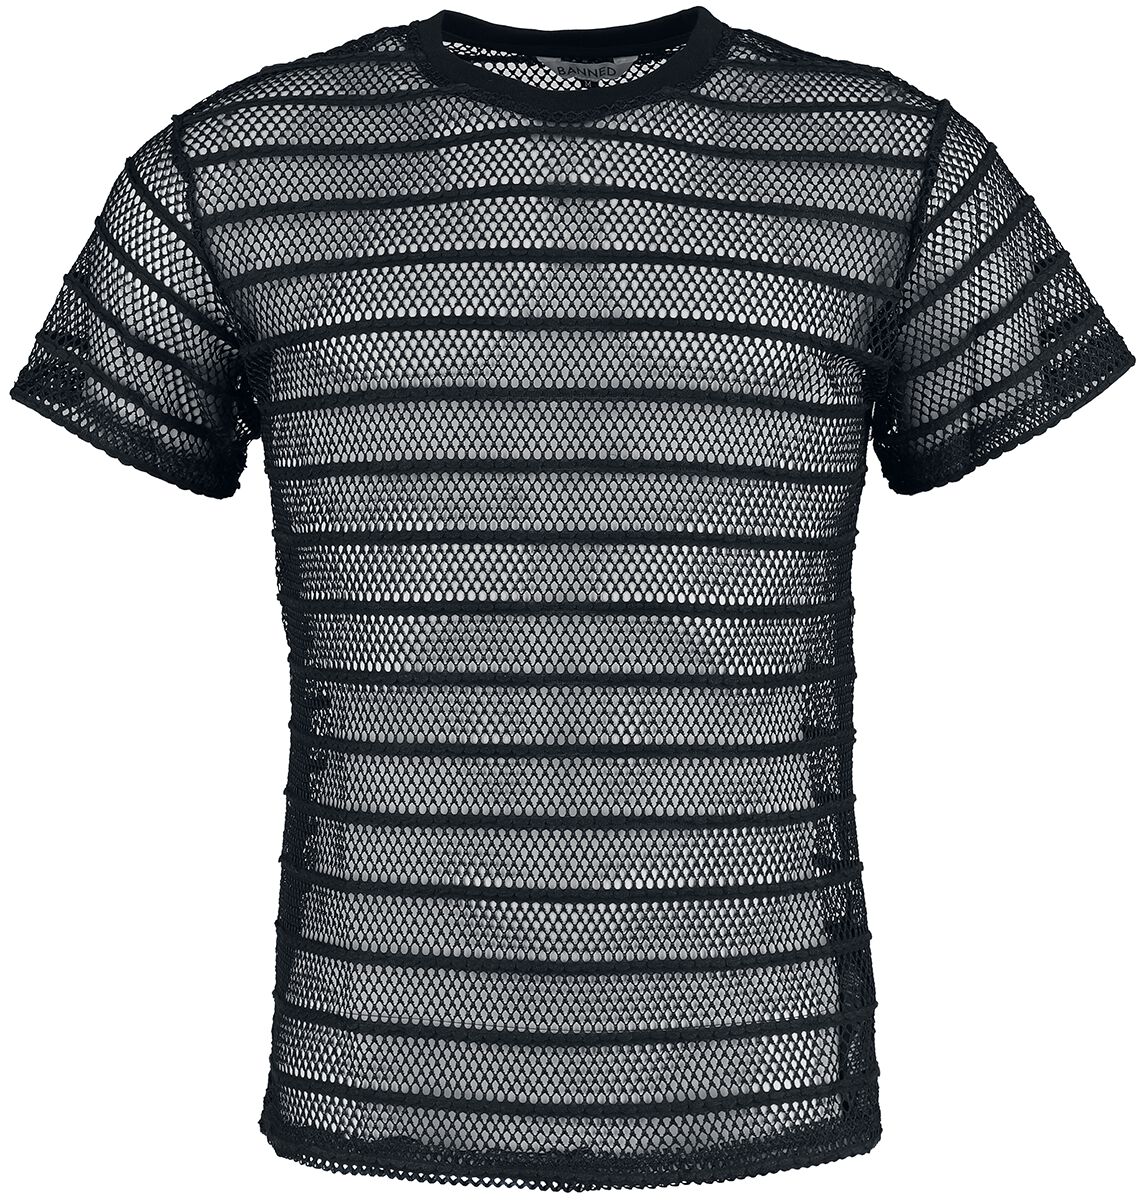 Banned Alternative - Gothic T-Shirt - Black Mesh Shirt - S bis XXL - für Männer - Größe S - schwarz